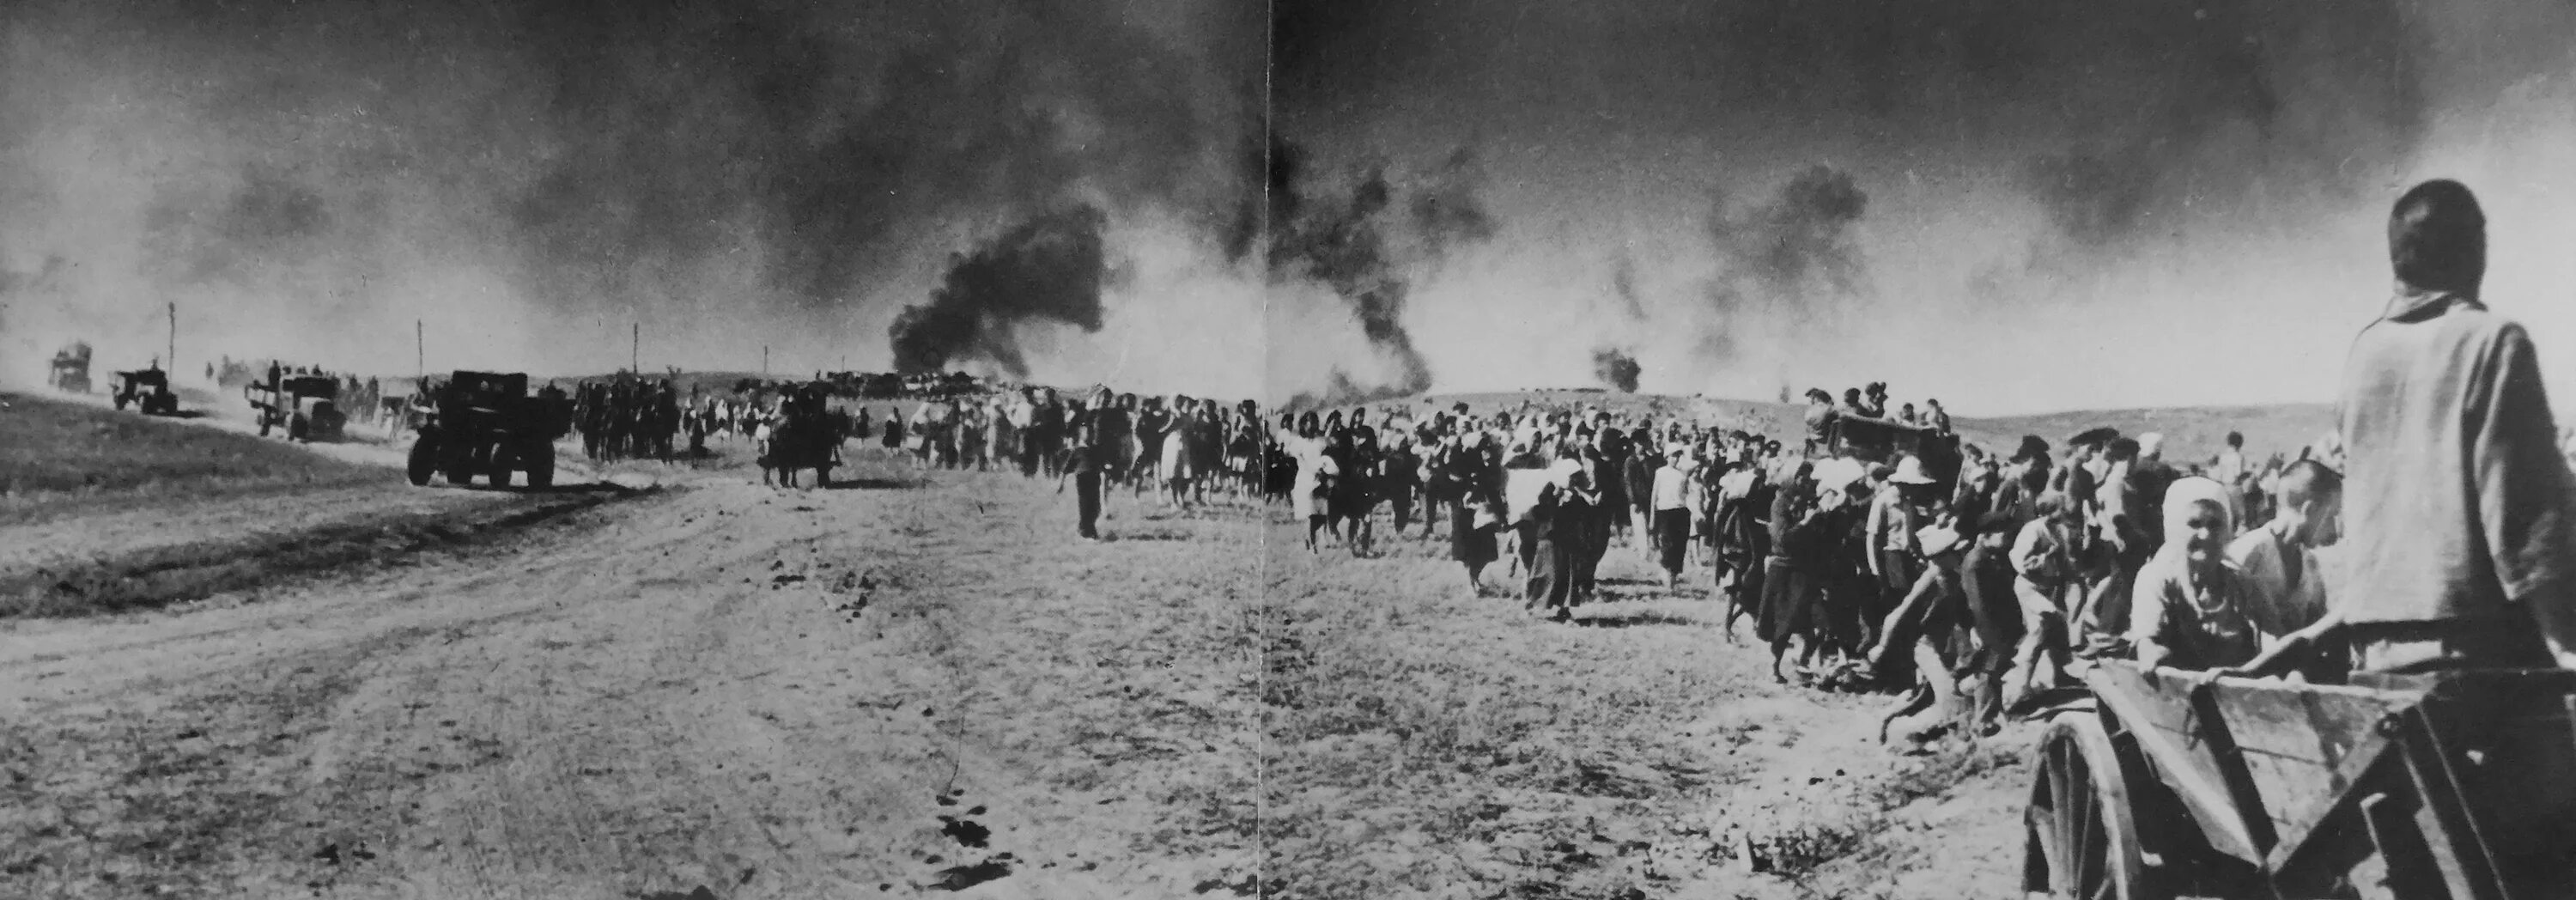 Беженцы в годы ВОВ 1941-1945г.г. Беженцы в первые дни войны 1941-1945.